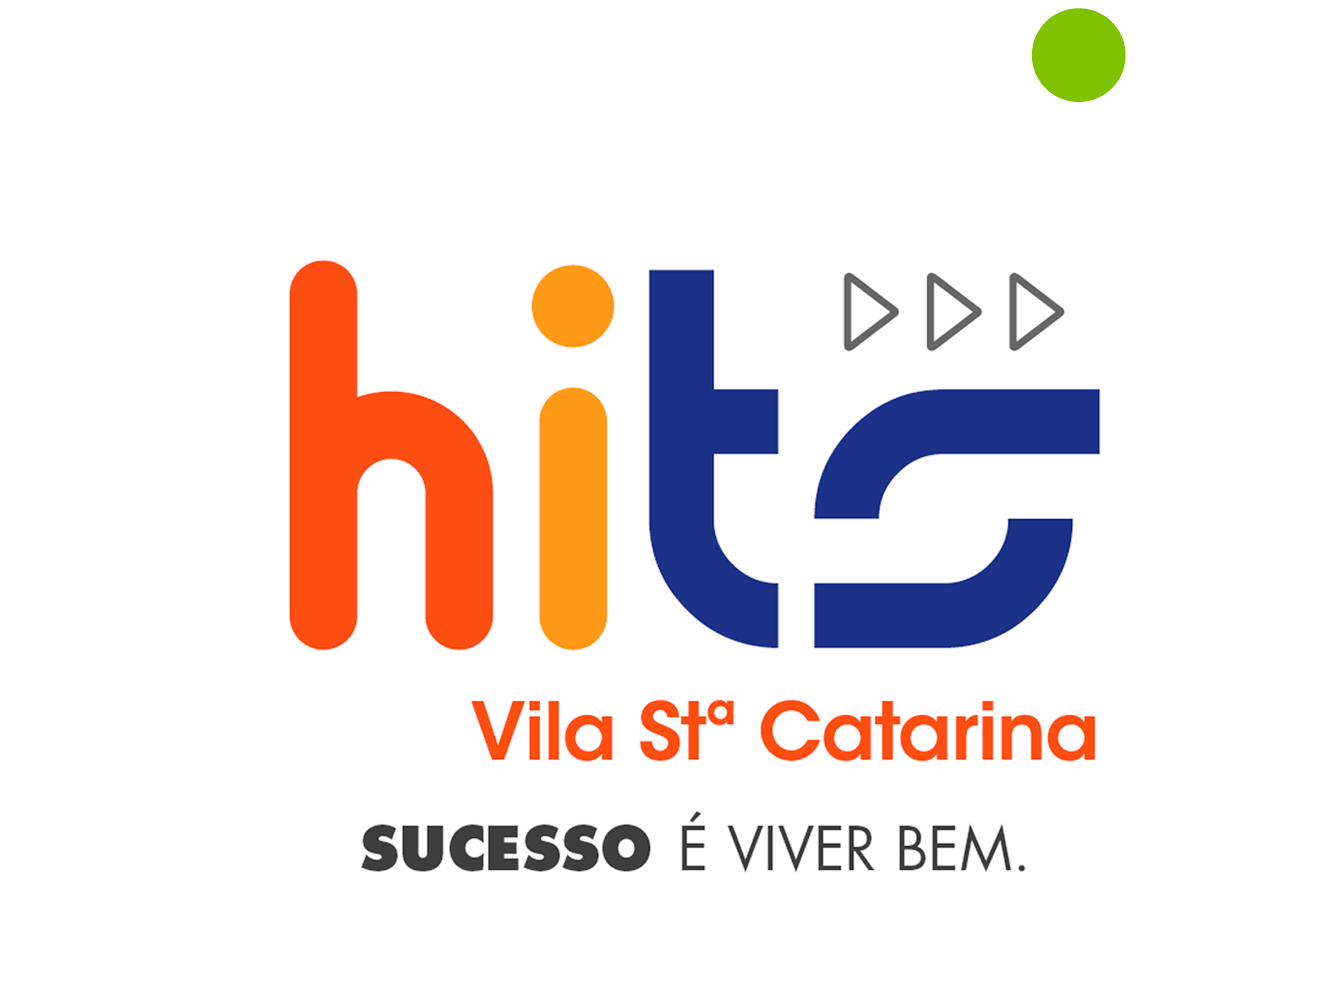 Hits Santa Catarina